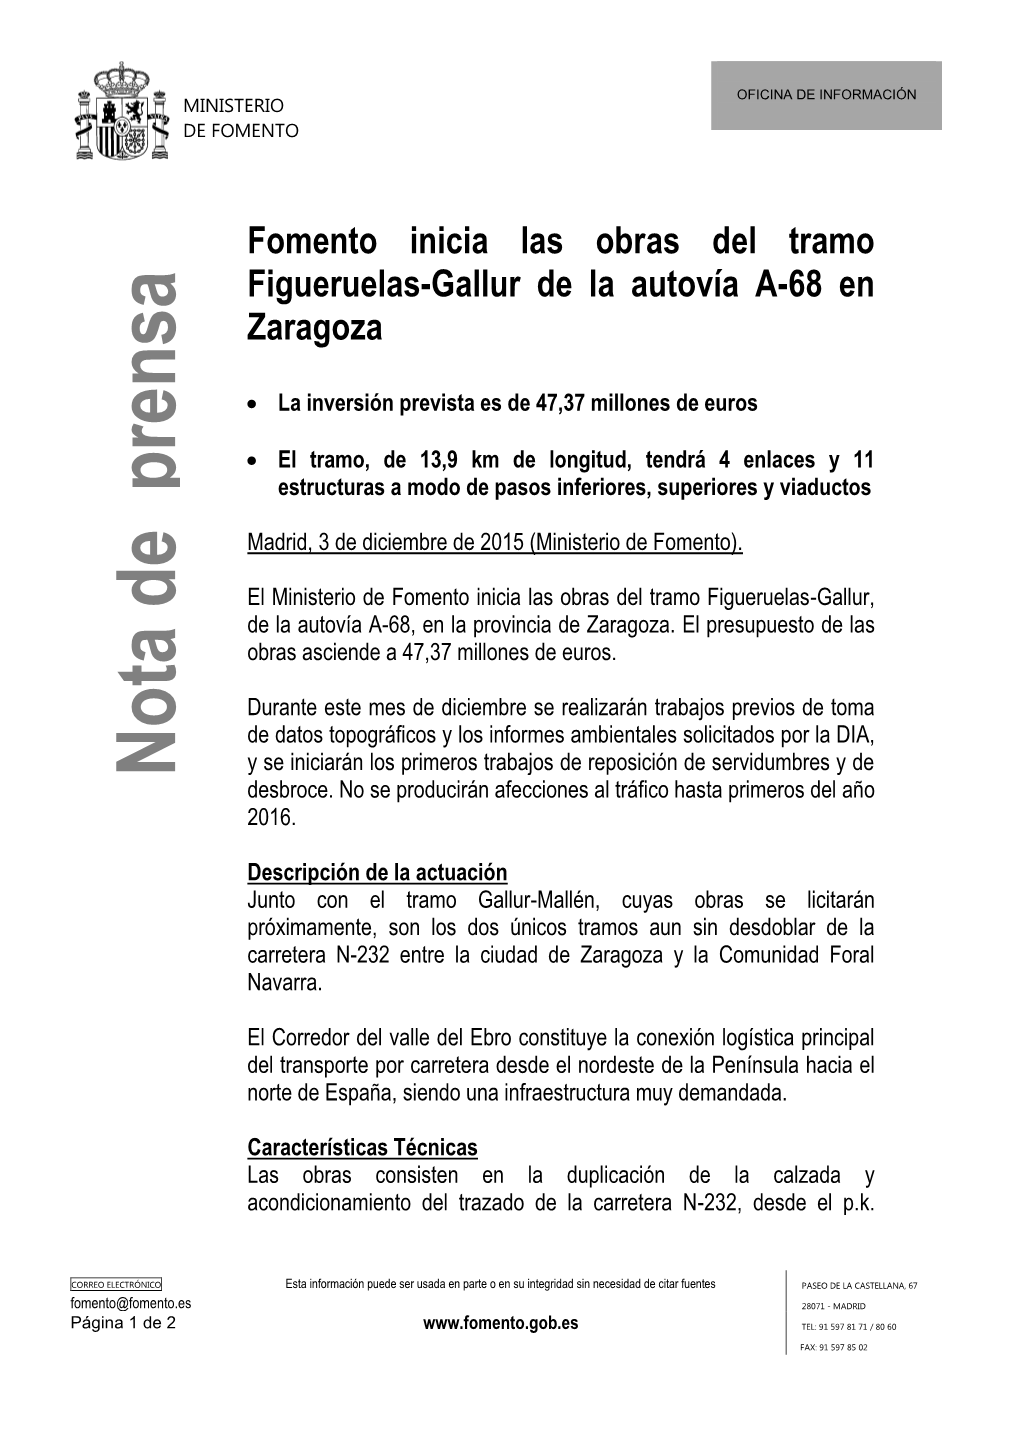 Fomento Inicia Las Obras Del Tramo Figueruelas-Gallur De La Autovía A-68 En Zaragoza